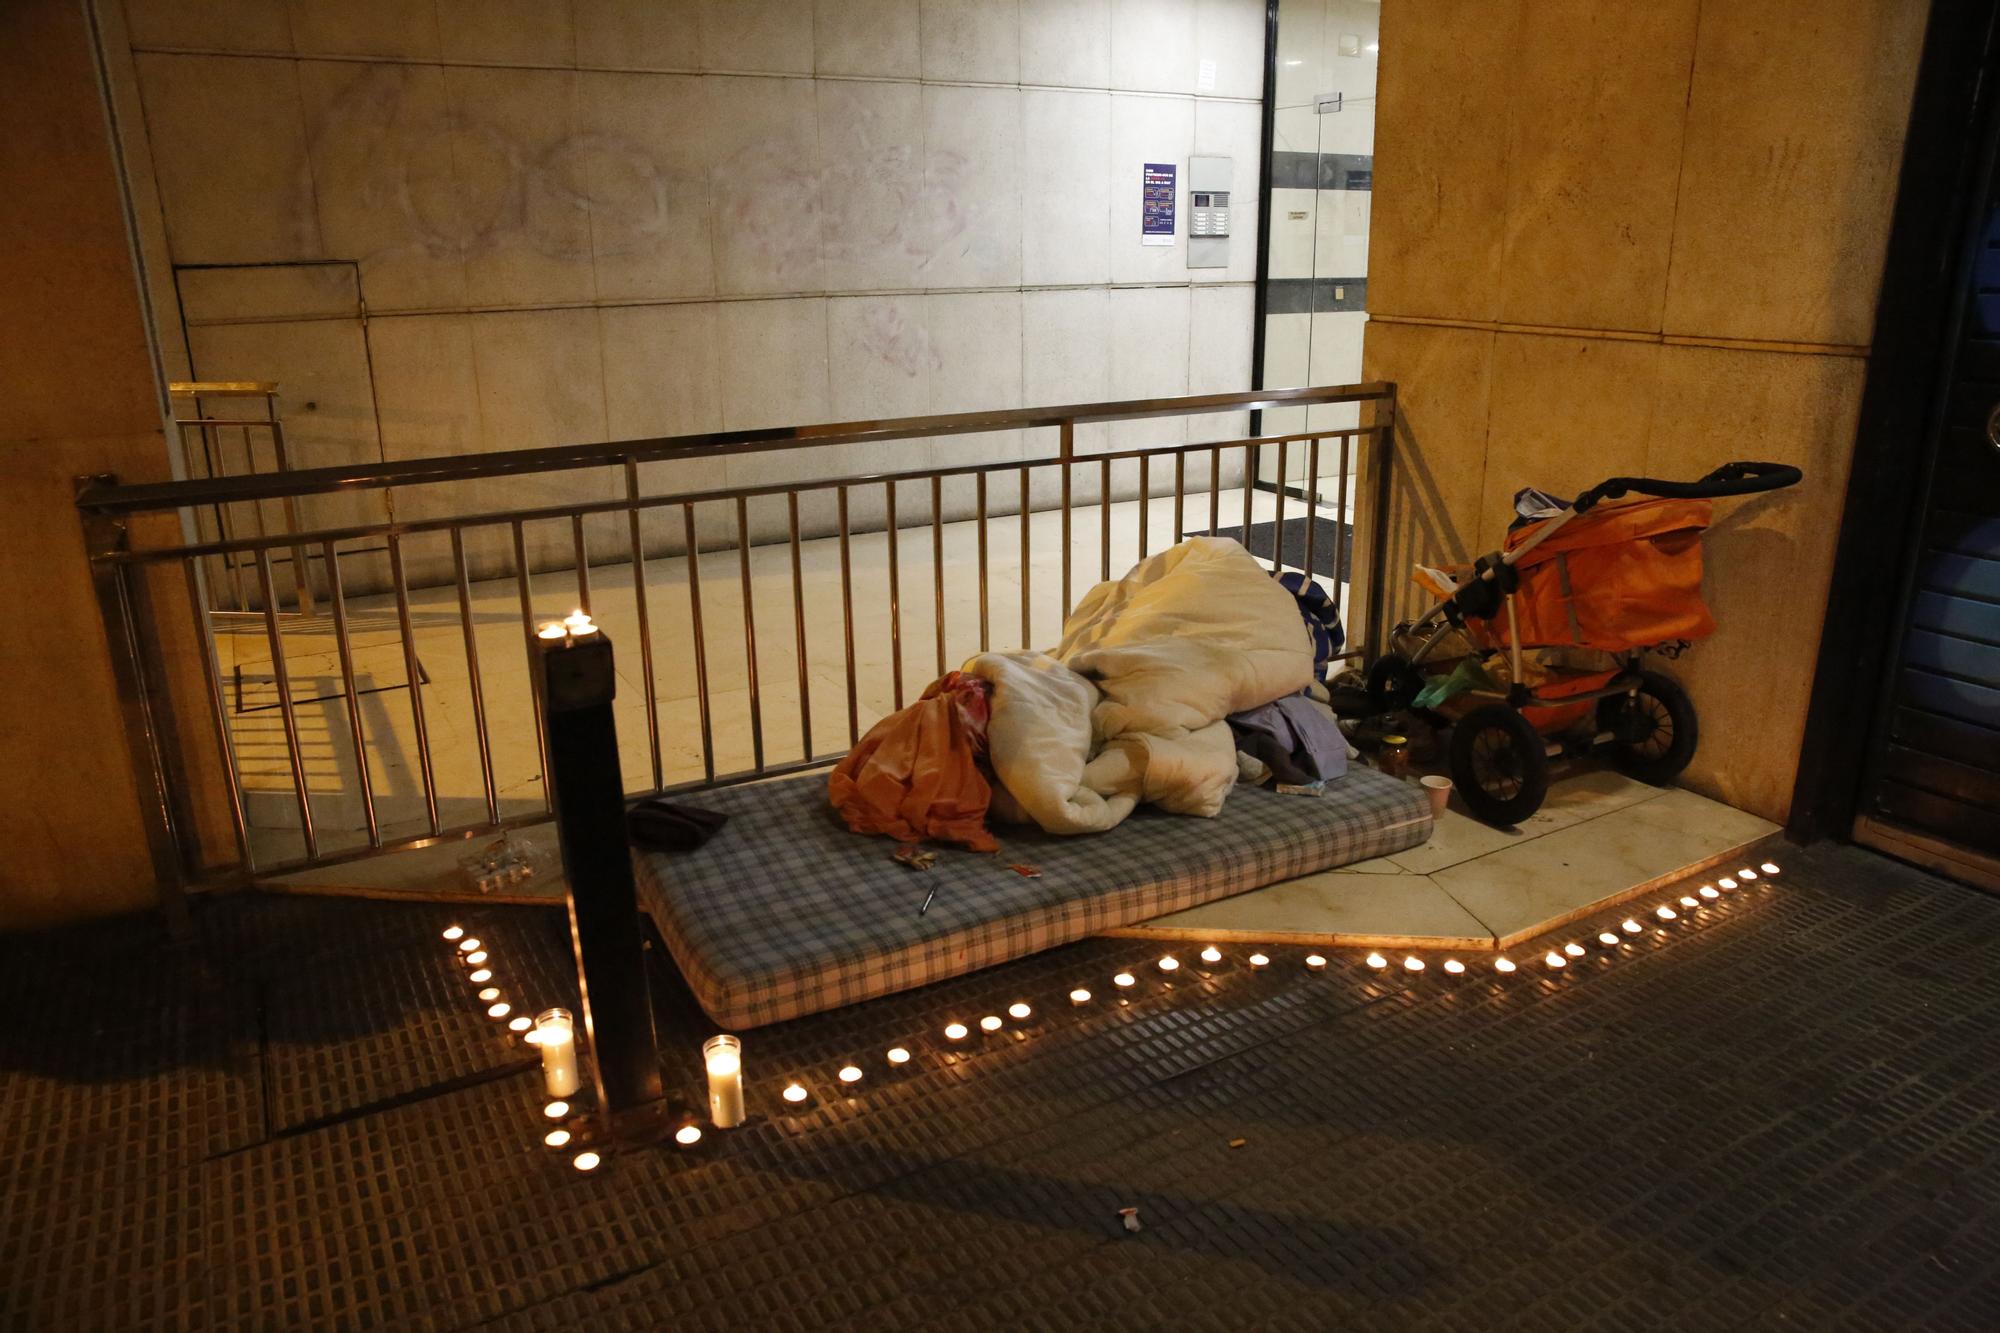 Homenaje a la tercera persona sin techo fallecida en Barcelona en pocos días.